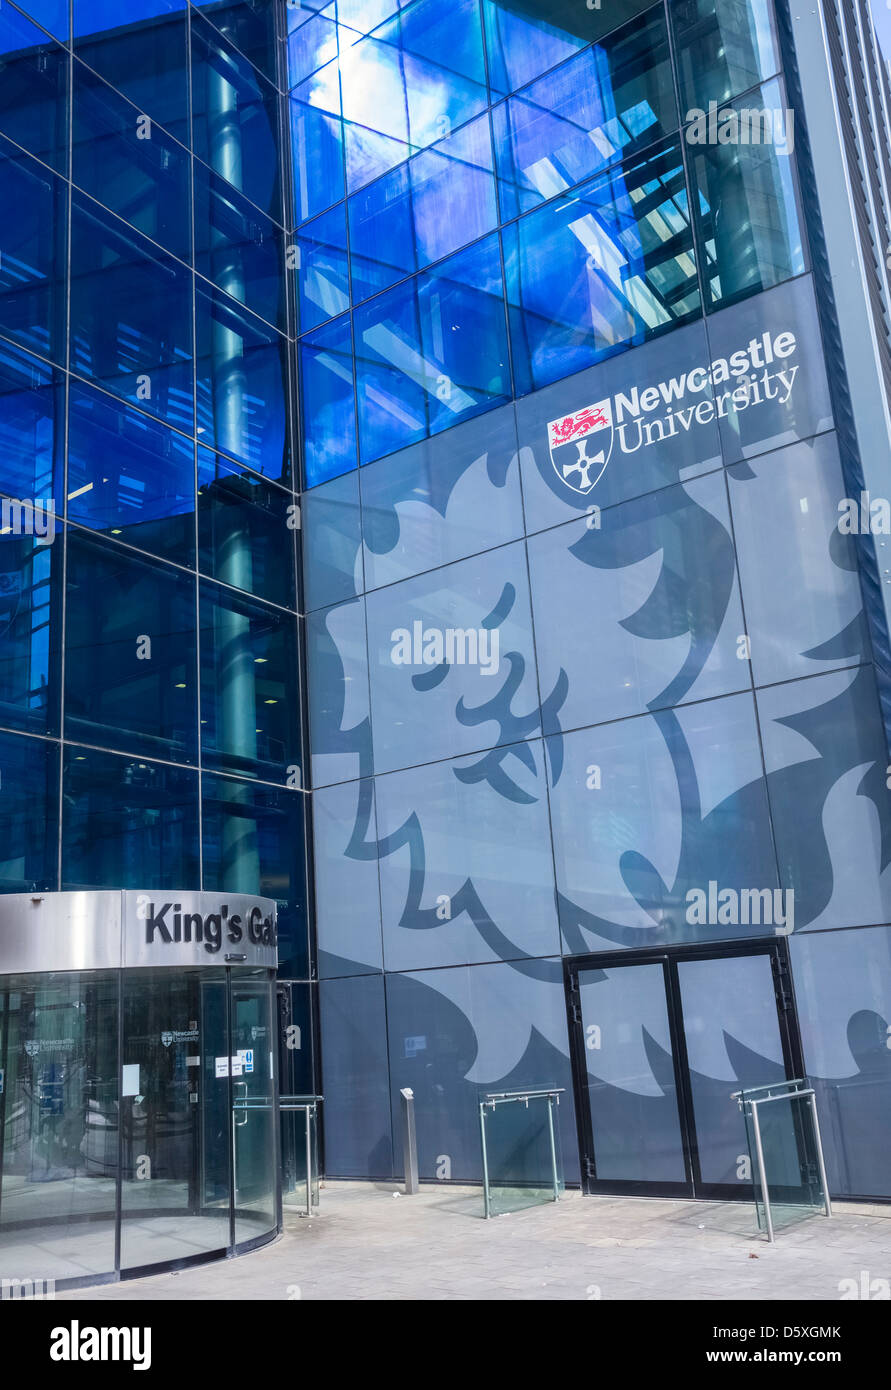 L'Université de Newcastle porte du roi immobilier carrières, l'hébergement, le bien-être des élèves, la situation financière des étudiants et des Relations avec les anciens. Banque D'Images